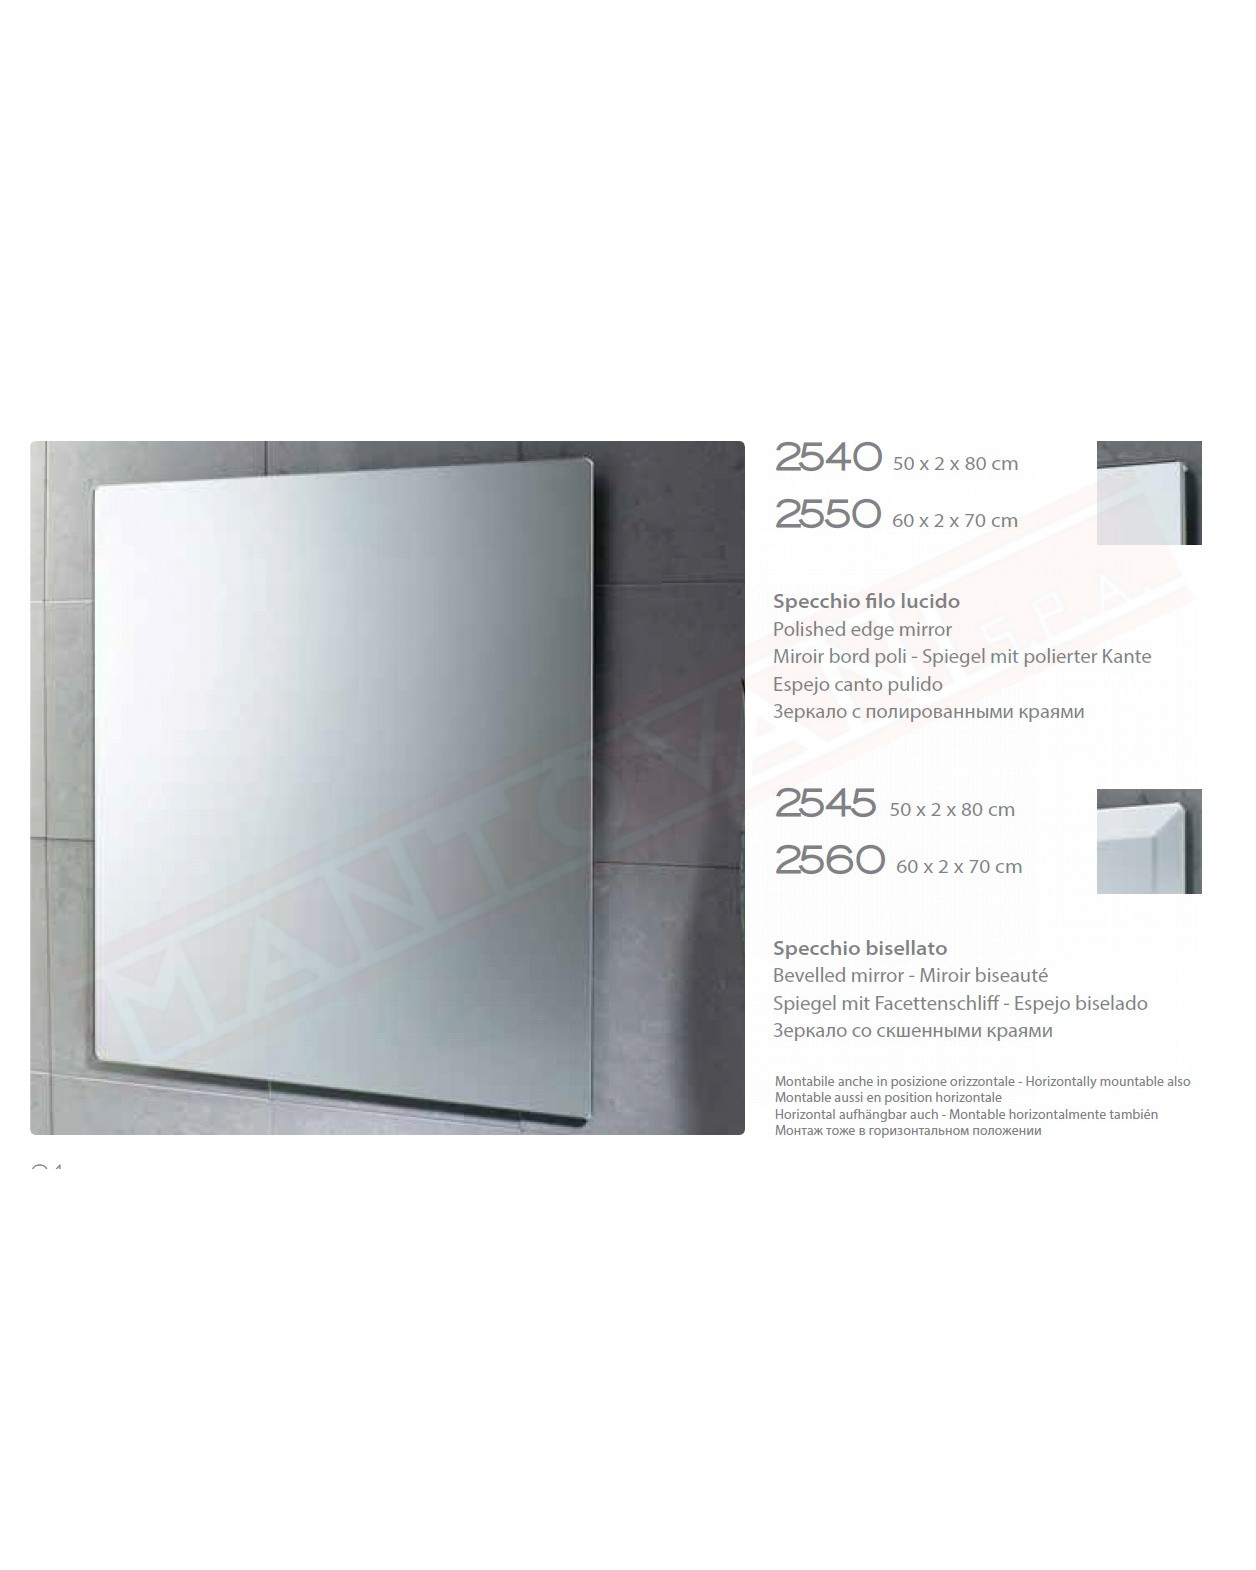 Gedy specchio bagno bisellato 50x80 reversibile misure art 50x2x80